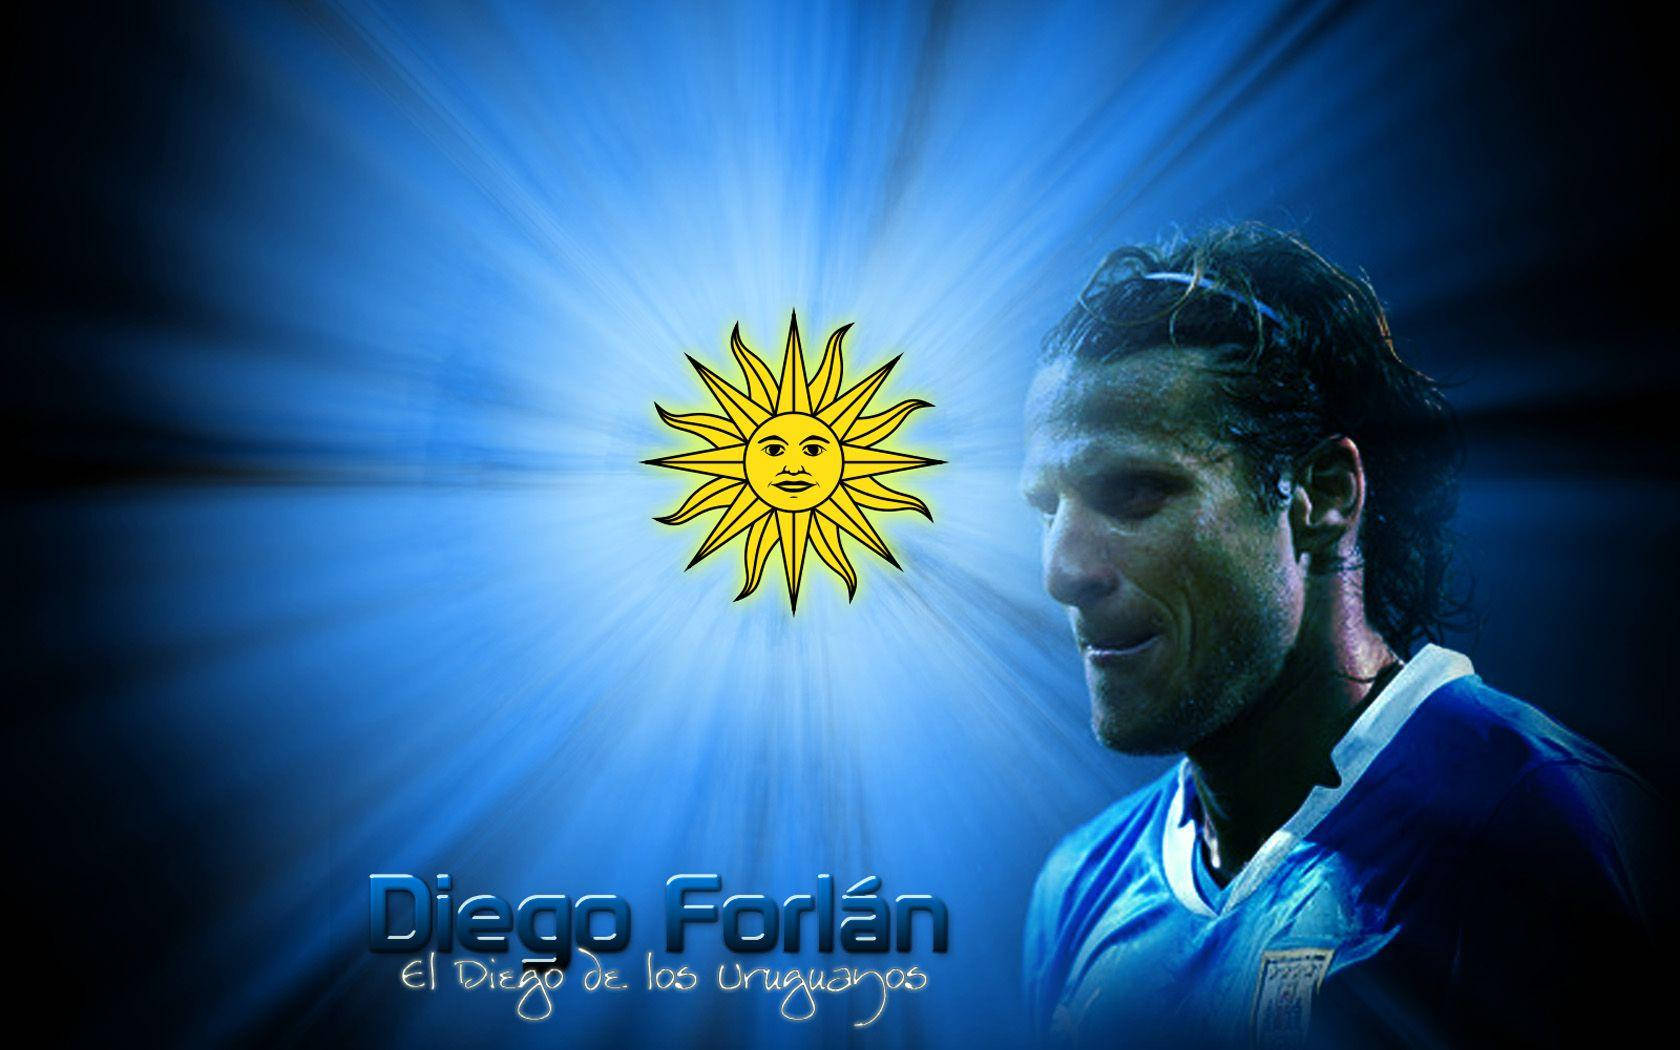 Uruguay National Football Team Diego Forlan Art Wallpaper